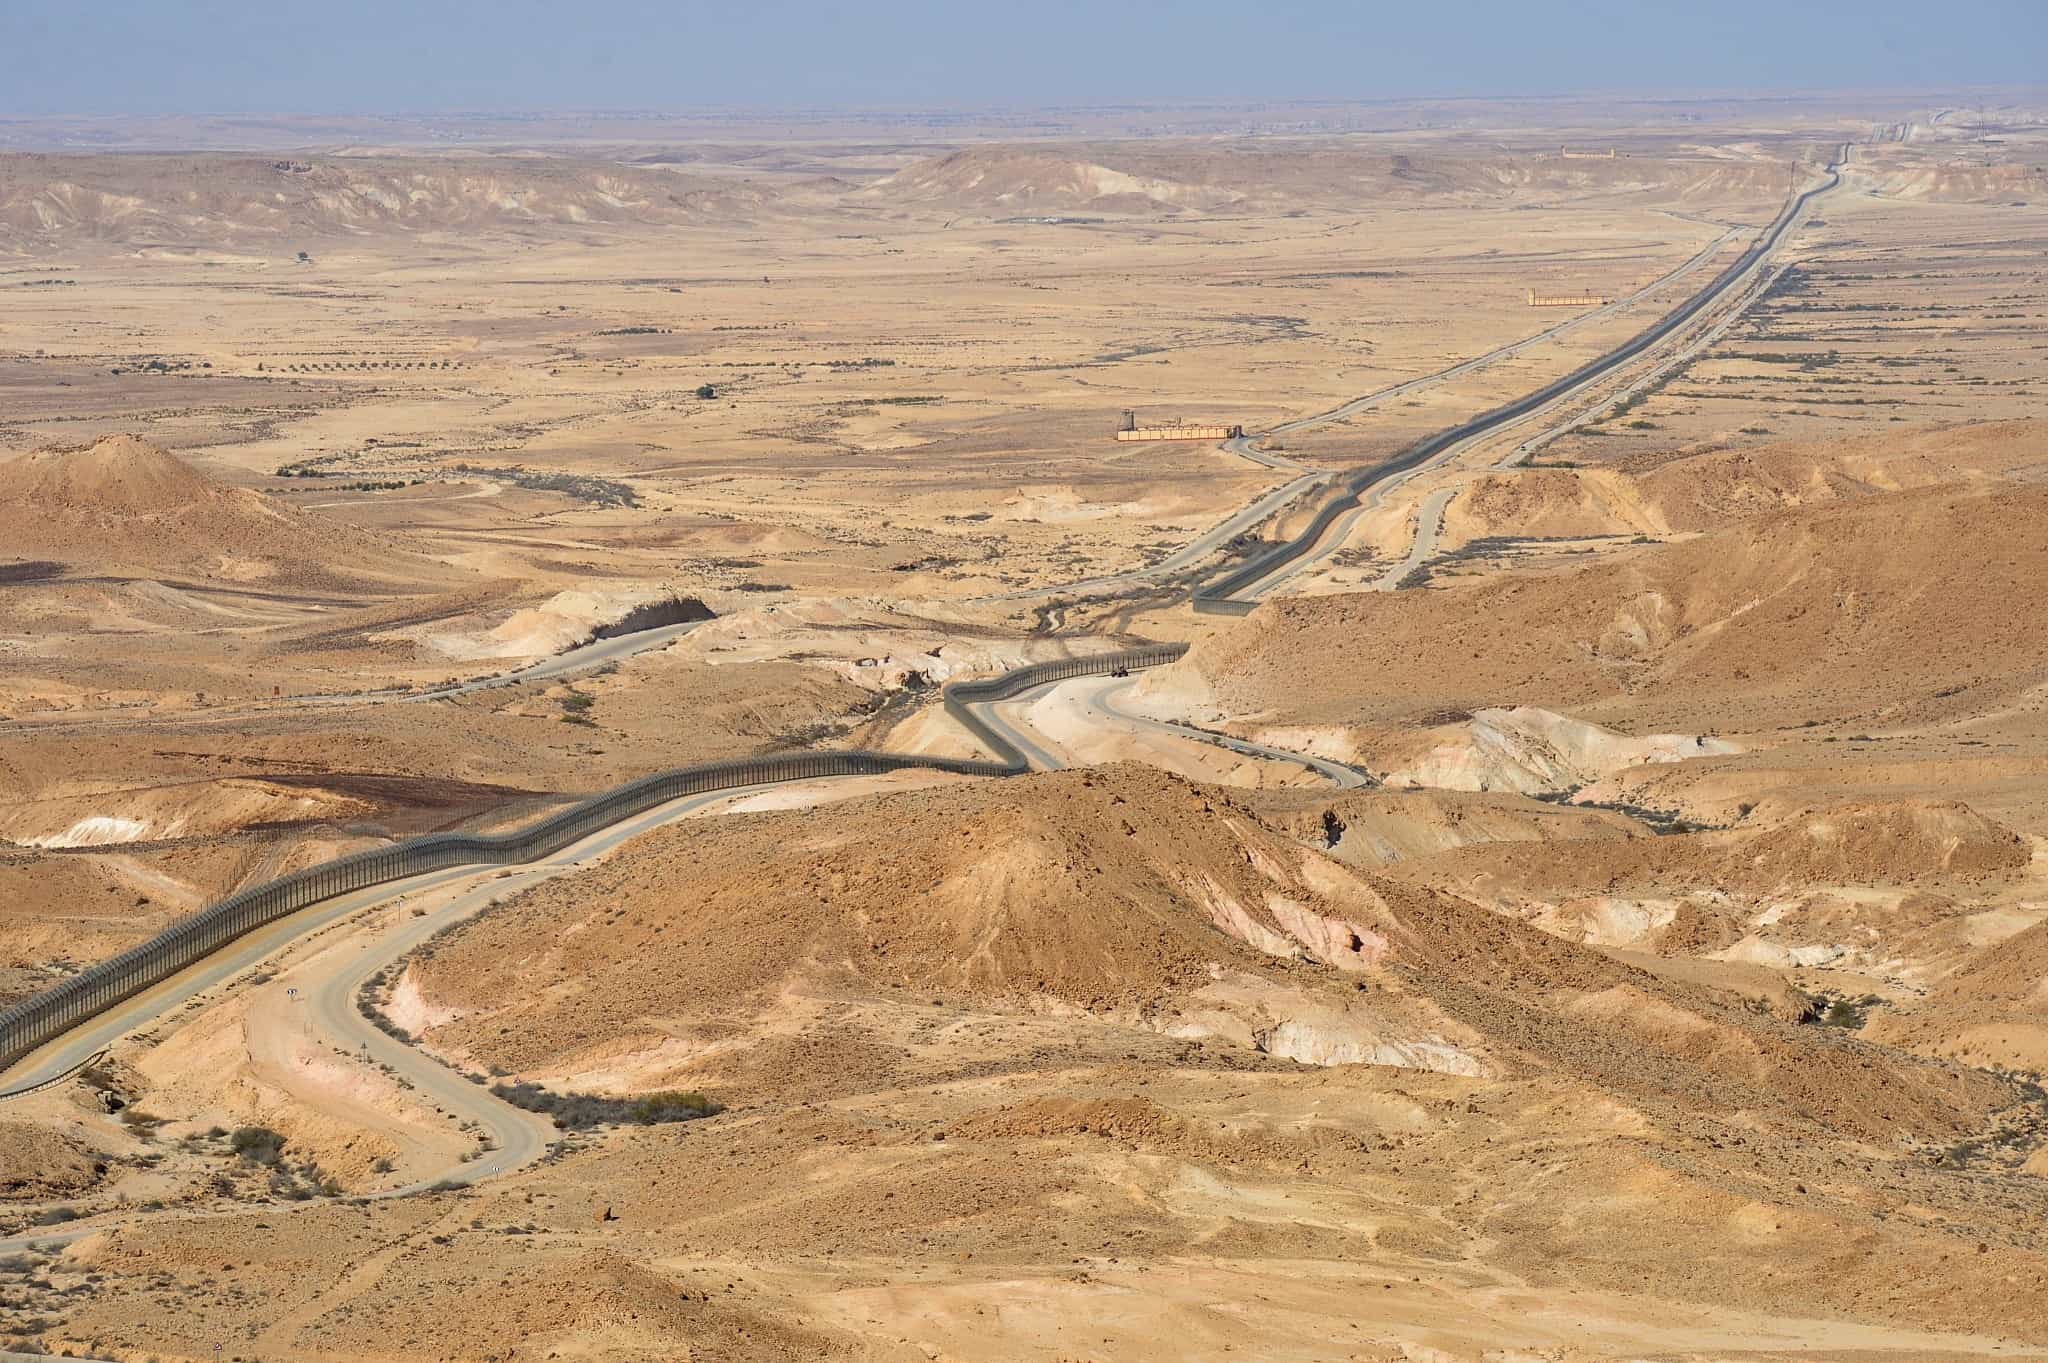 גבול ישראל-מצרים בסיני (צילום: יוסי זלינגר, פלאש 90)